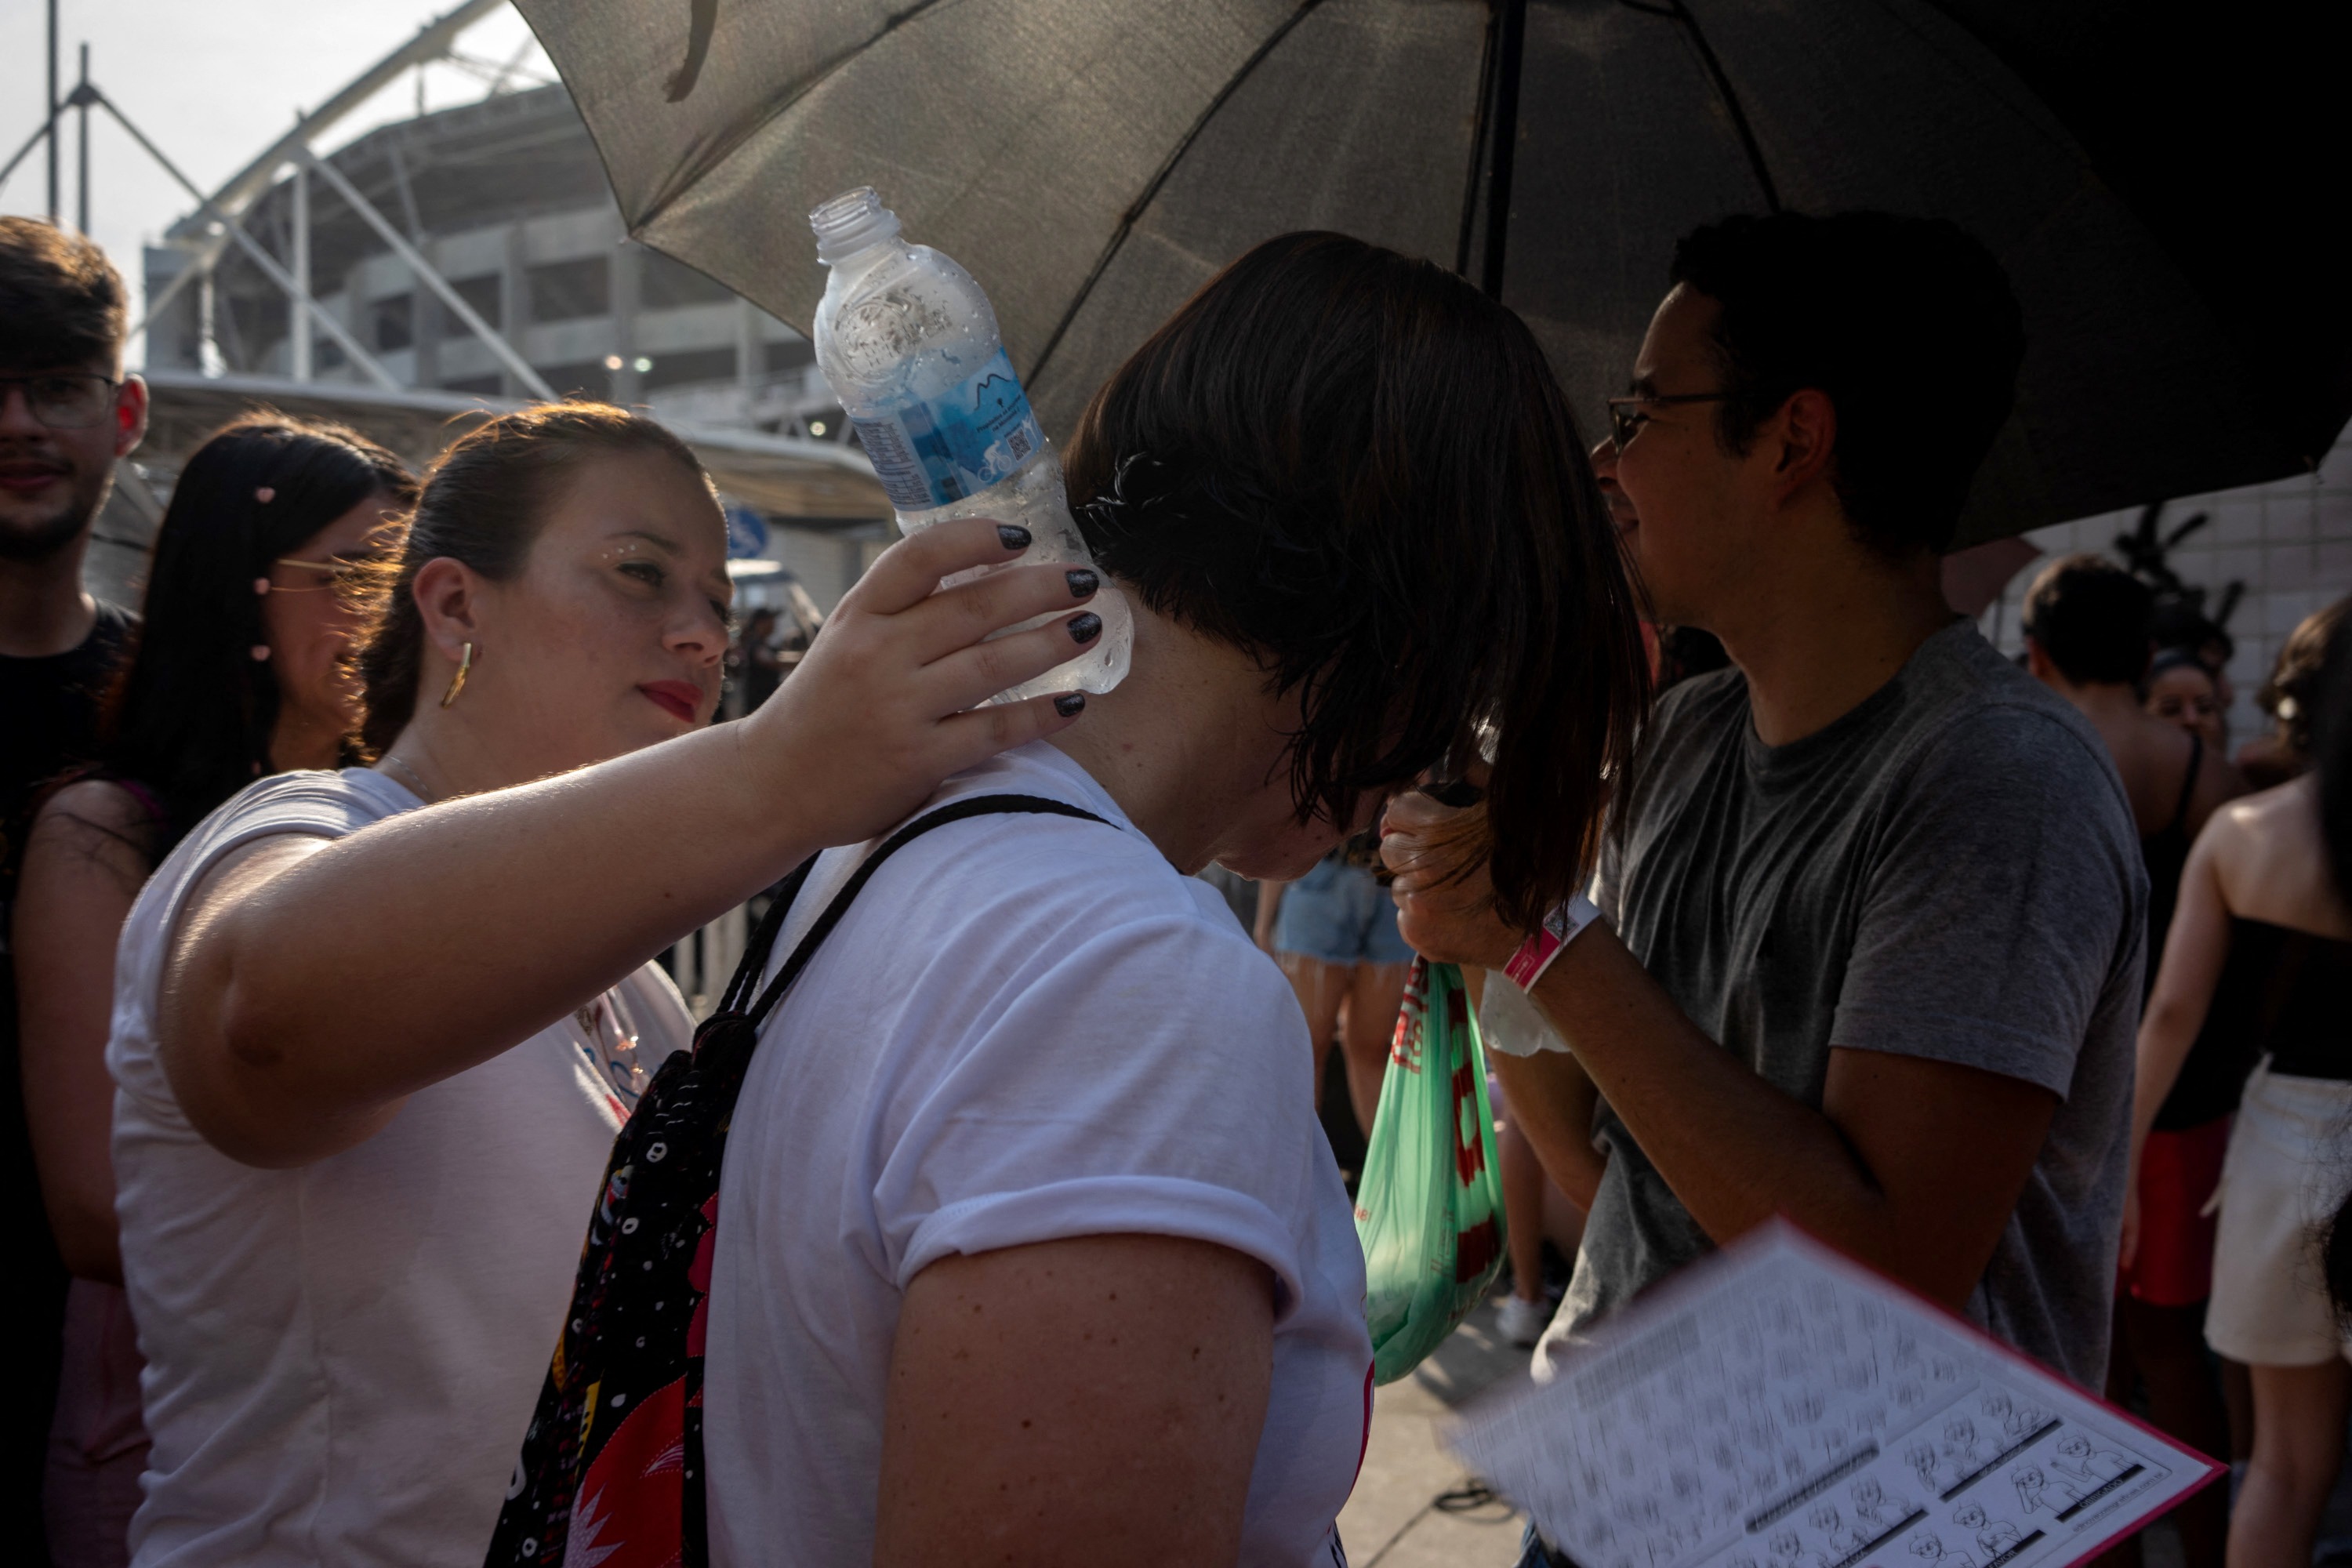 Fánaticos reclamaron que no pudieron entrar con botellas de agua. Fuente: AFP